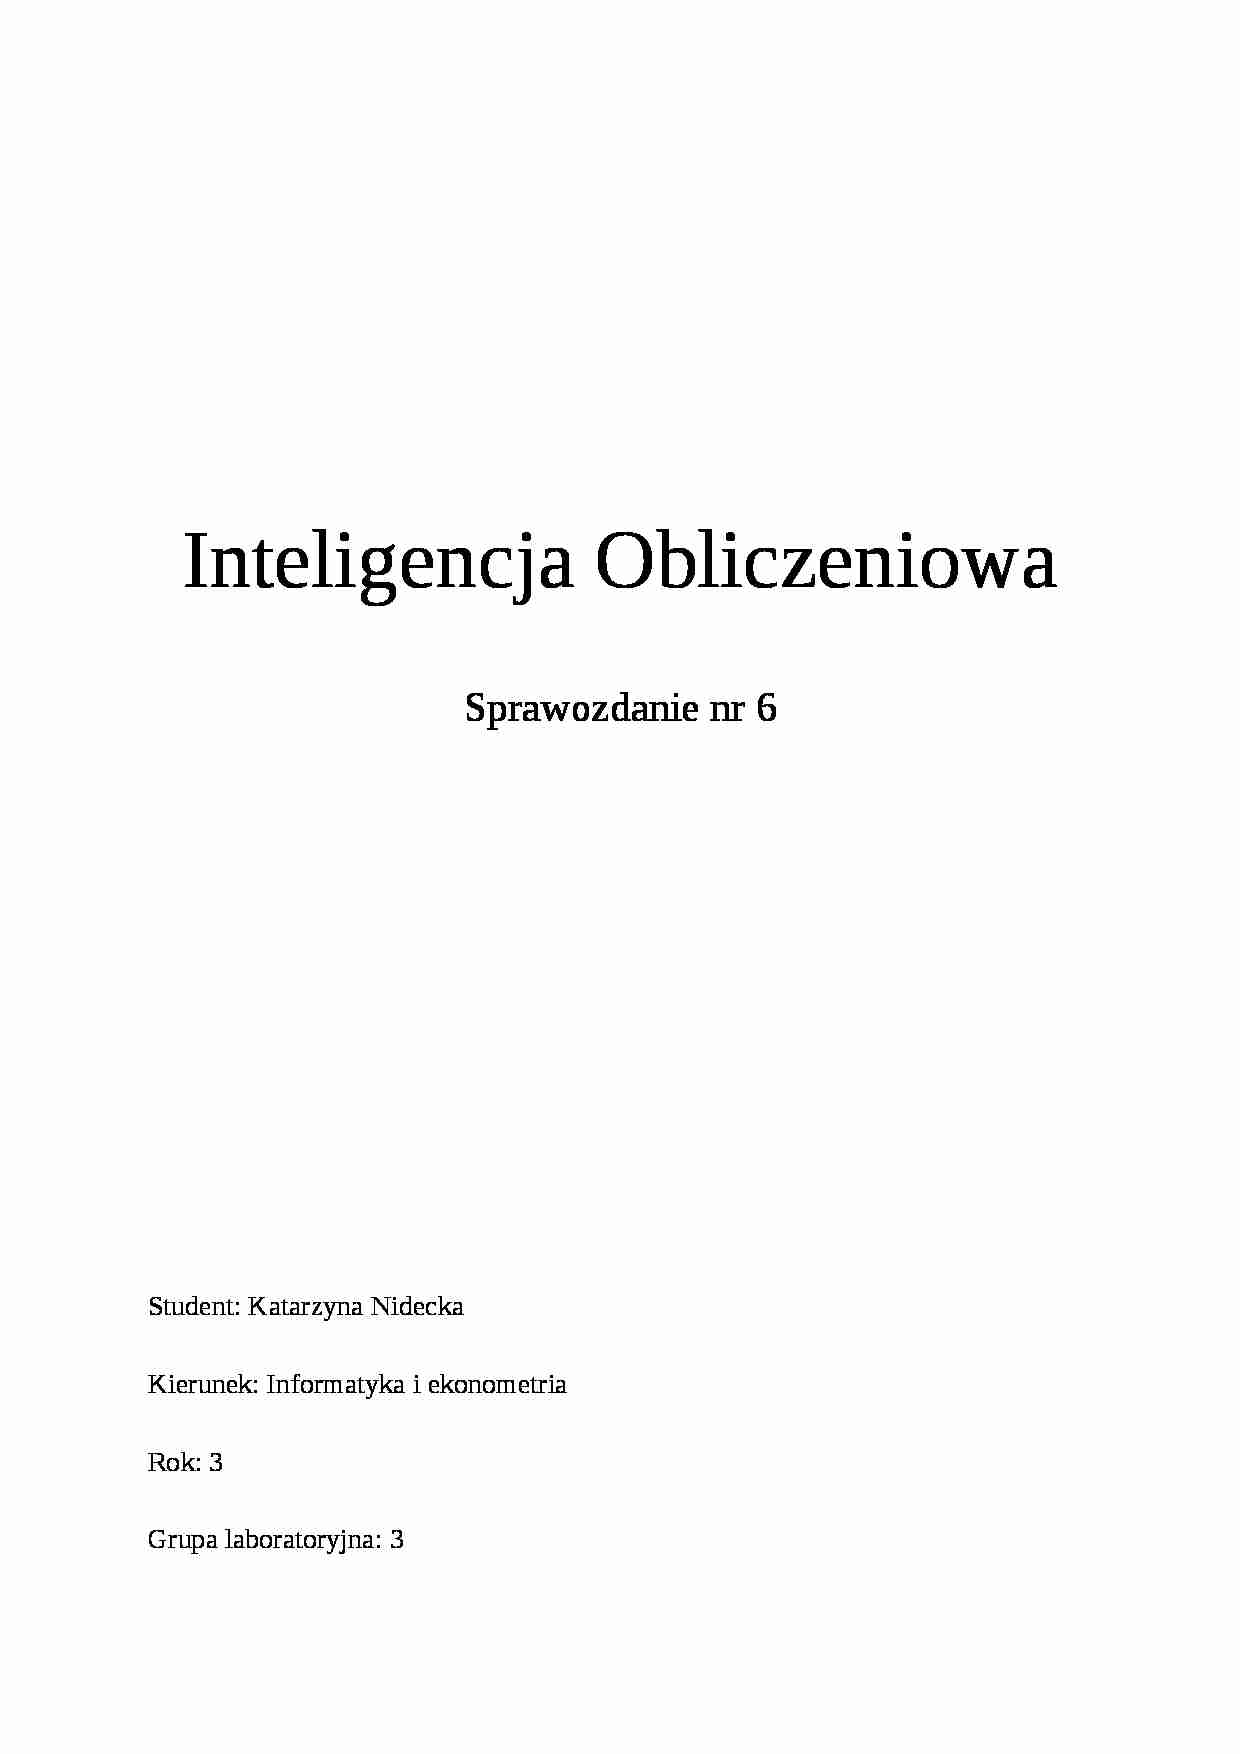 Inteligencja Obliczeniowa - strona 1